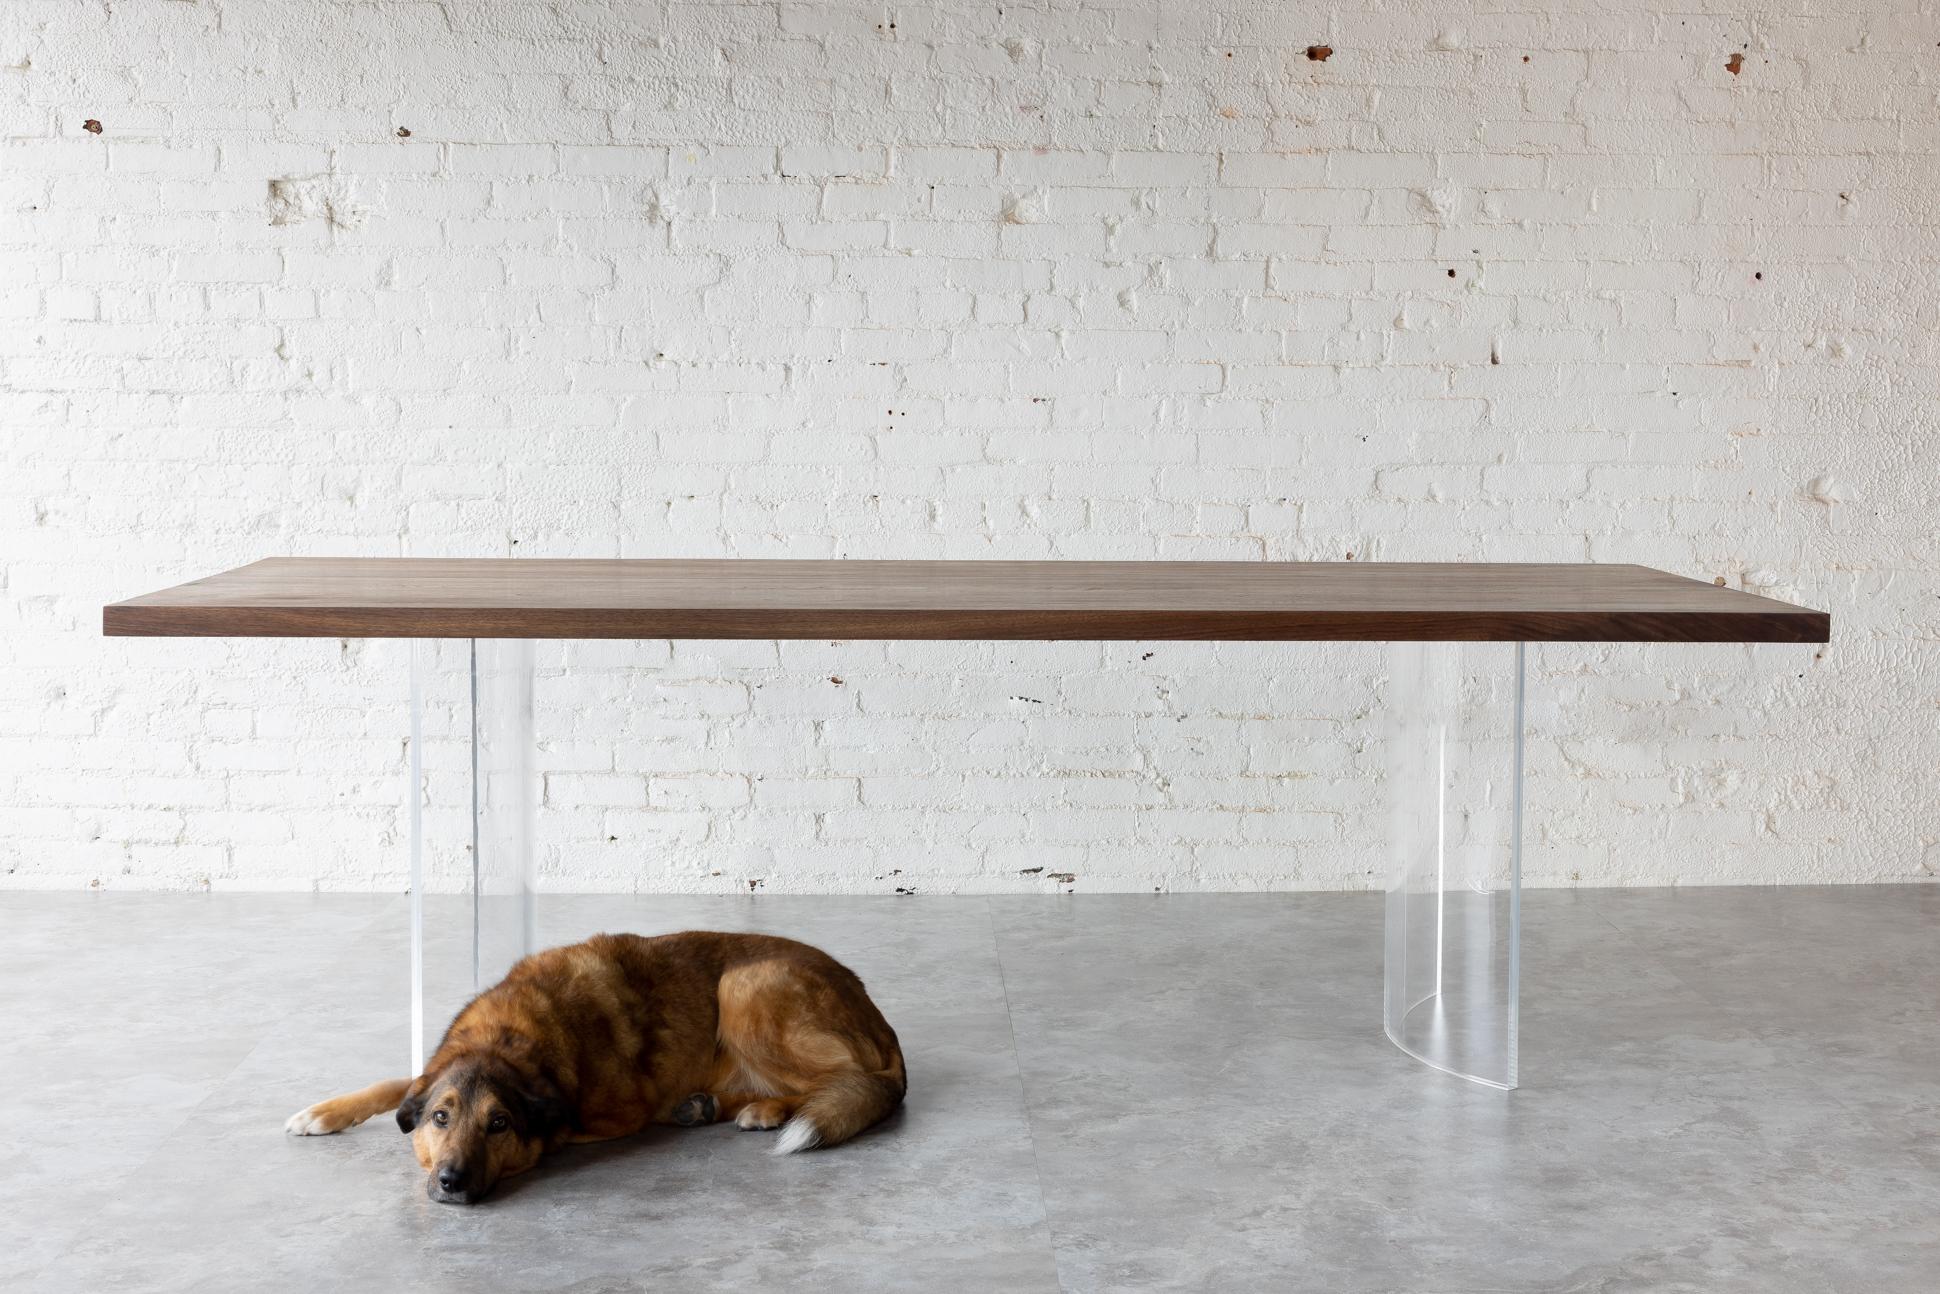 The Ban Transparent Table by Autonomous Furniture - Fabriquée avec la plus grande précision, cette étonnante table de salle à manger témoigne de notre engagement à perturber la maison moderne avec nos meubles dramatiquement contemporains.

Fabriqué